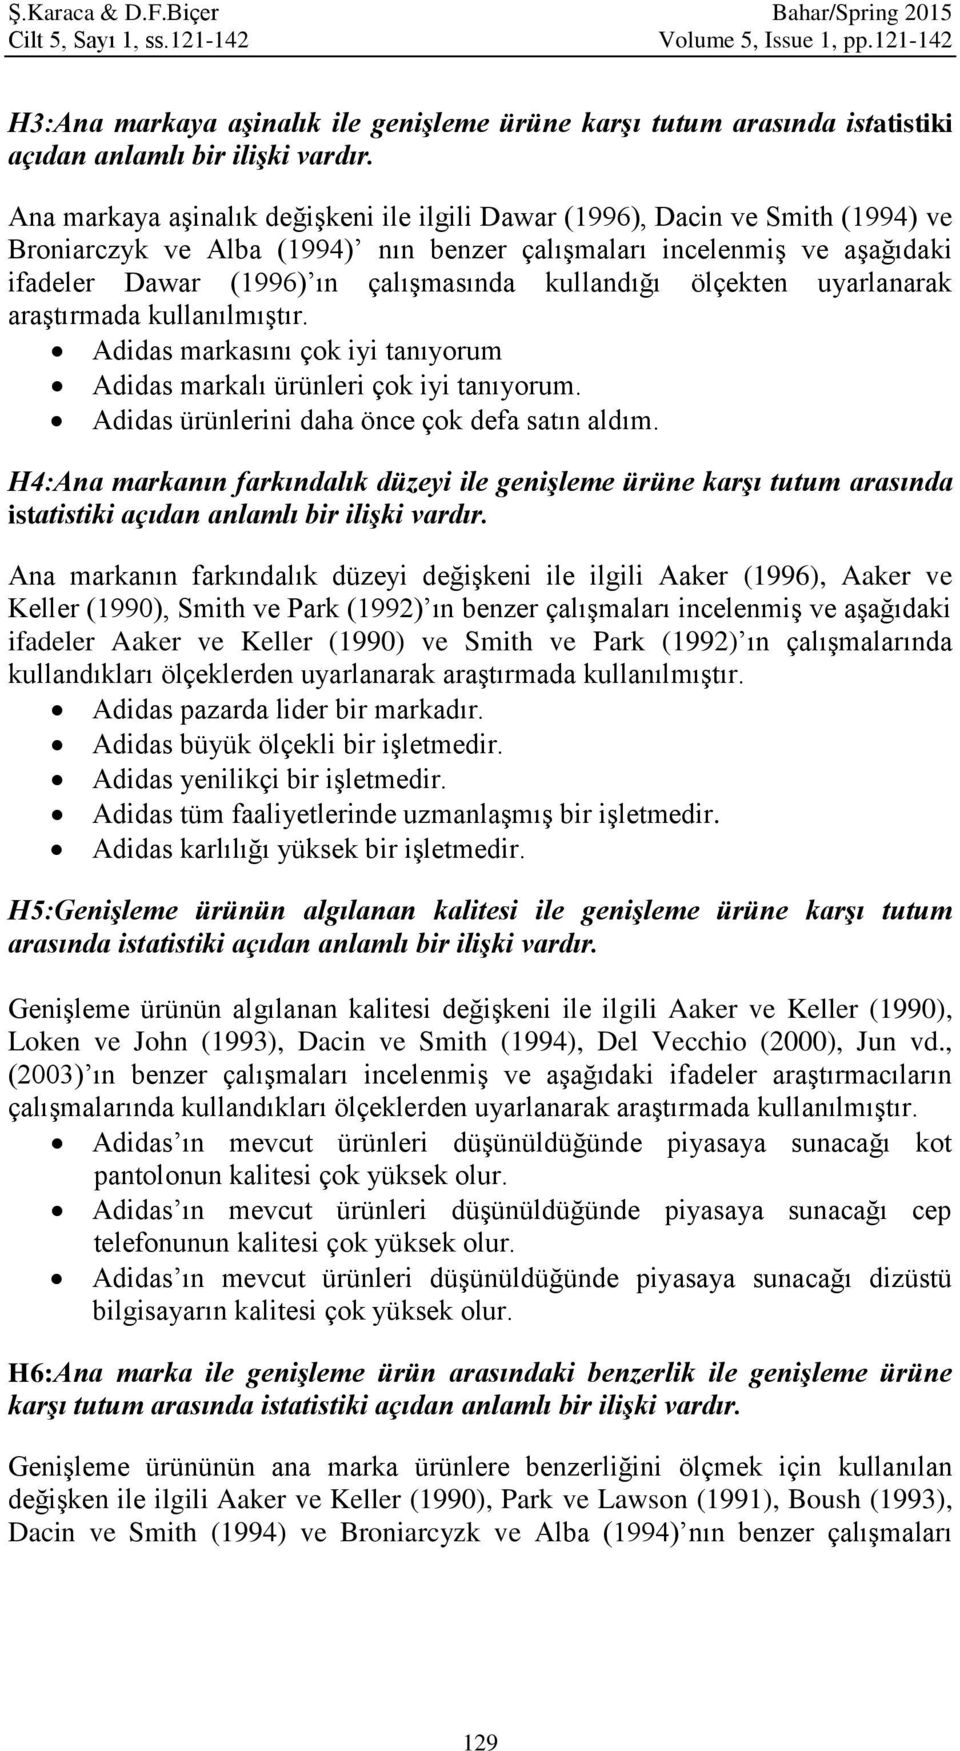 Ana markaya aşinalık değişkeni ile ilgili Dawar (1996), Dacin ve Smith (1994) ve Broniarczyk ve Alba (1994) nın benzer çalışmaları incelenmiş ve aşağıdaki ifadeler Dawar (1996) ın çalışmasında